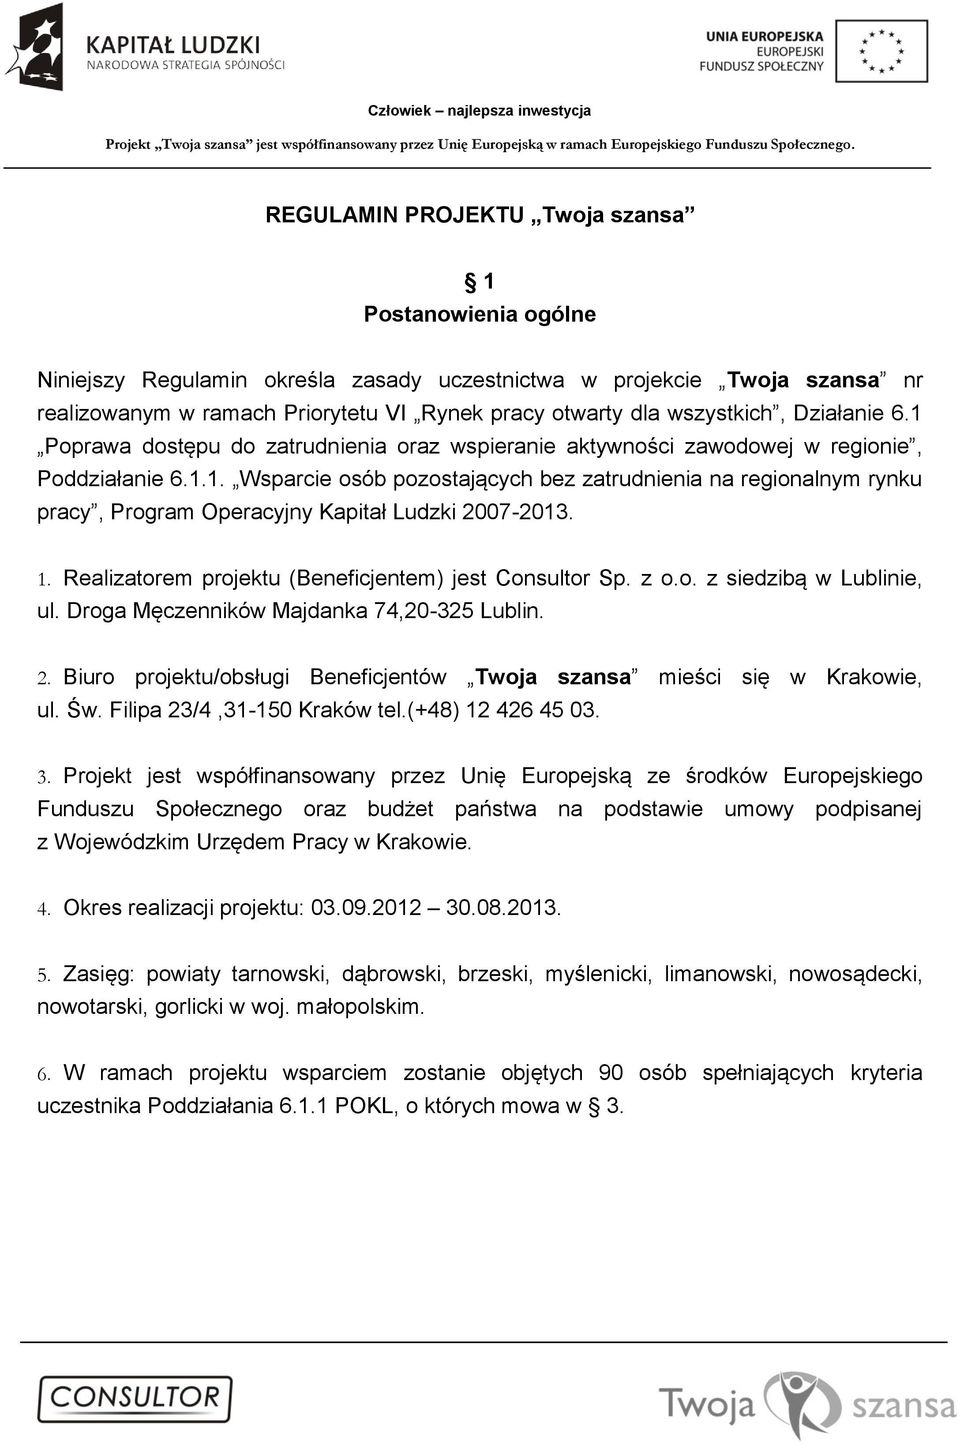 1. Realizatorem projektu (Beneficjentem) jest Consultor Sp. z o.o. z siedzibą w Lublinie, ul. Droga Męczenników Majdanka 74,20-325 Lublin. 2.